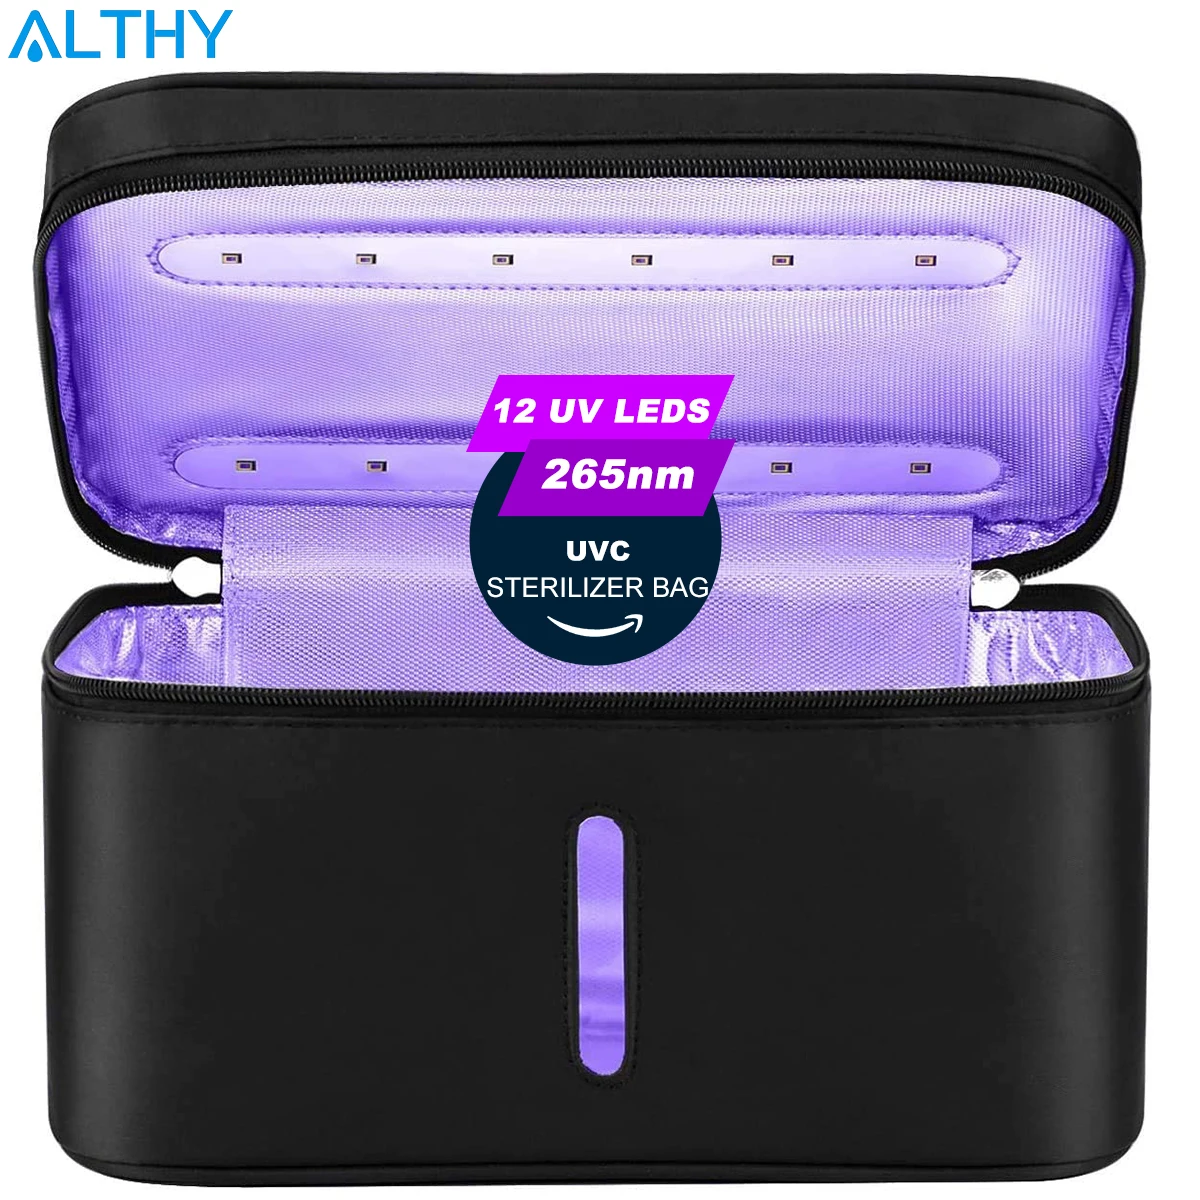 ALTHY 265nm LED UV Esterilizador Bolsa de la Caja del filtro de USB Recargable de la luz de la lámpara UVC Desinfección para Teléfono de la Botella de la Joyería de la Herramienta, etc. 2